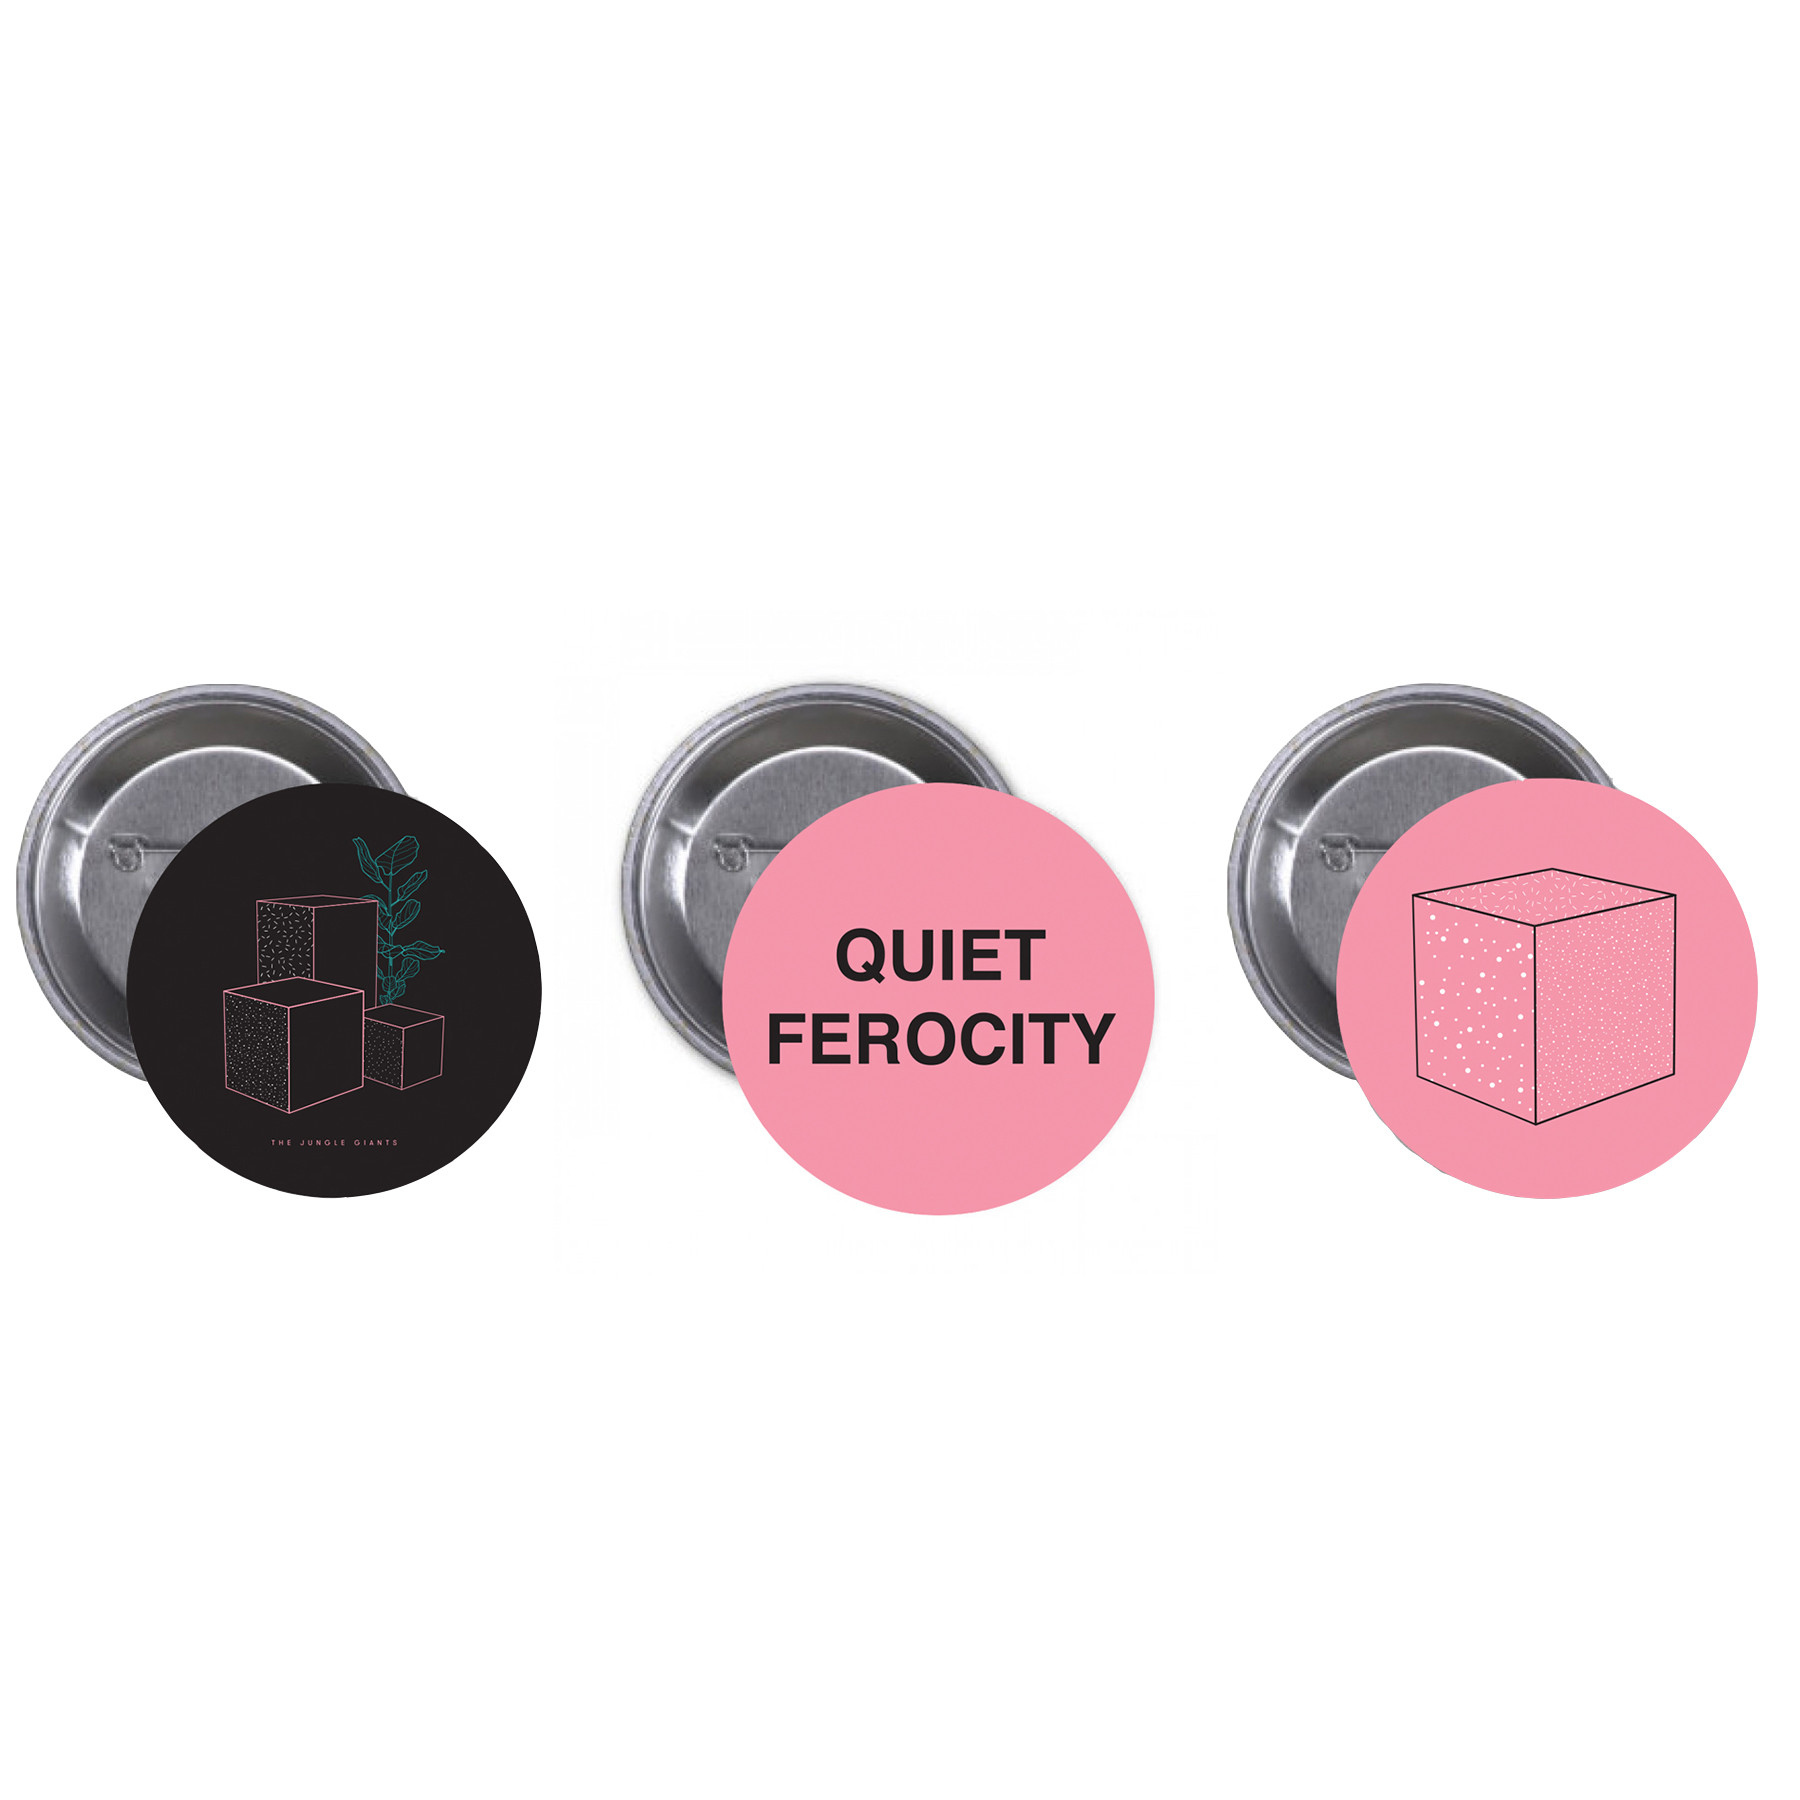 Quiet Ferocity Badge Set